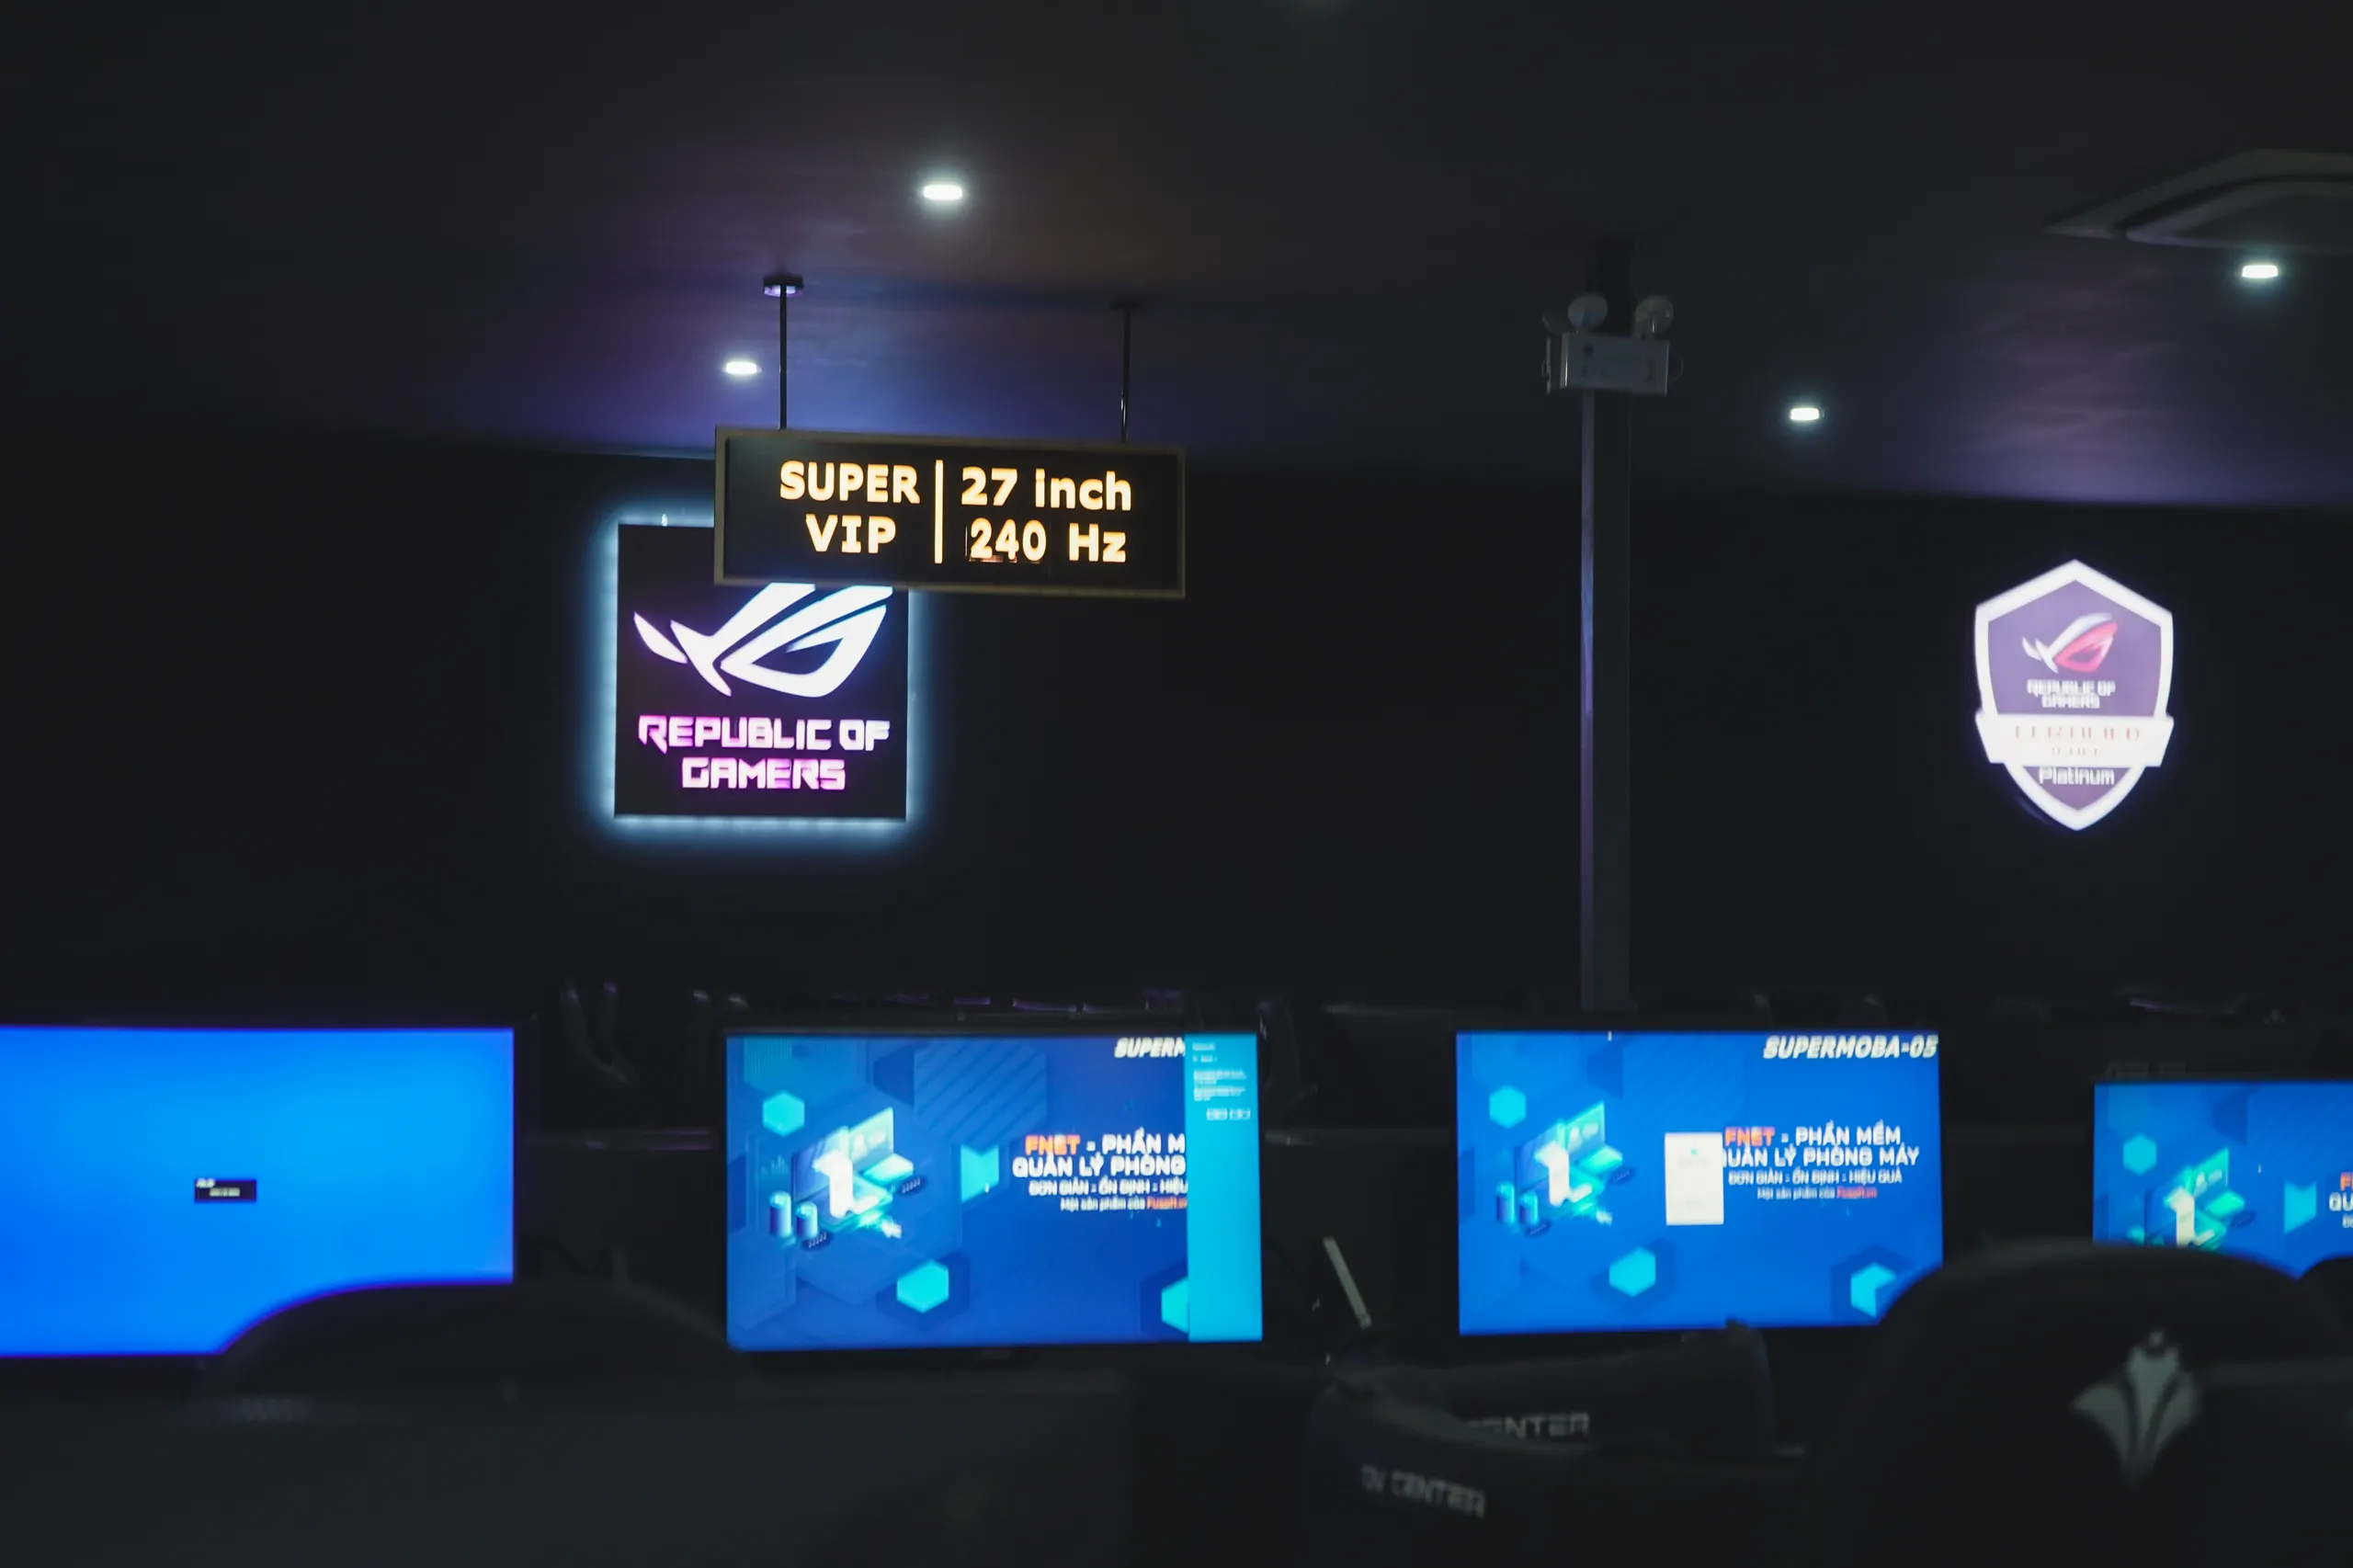 DV Center mang đến "cơn địa chấn" cho cộng đồng game thủ Cần Thơ với dàn máy ASUS "siêu khủng"